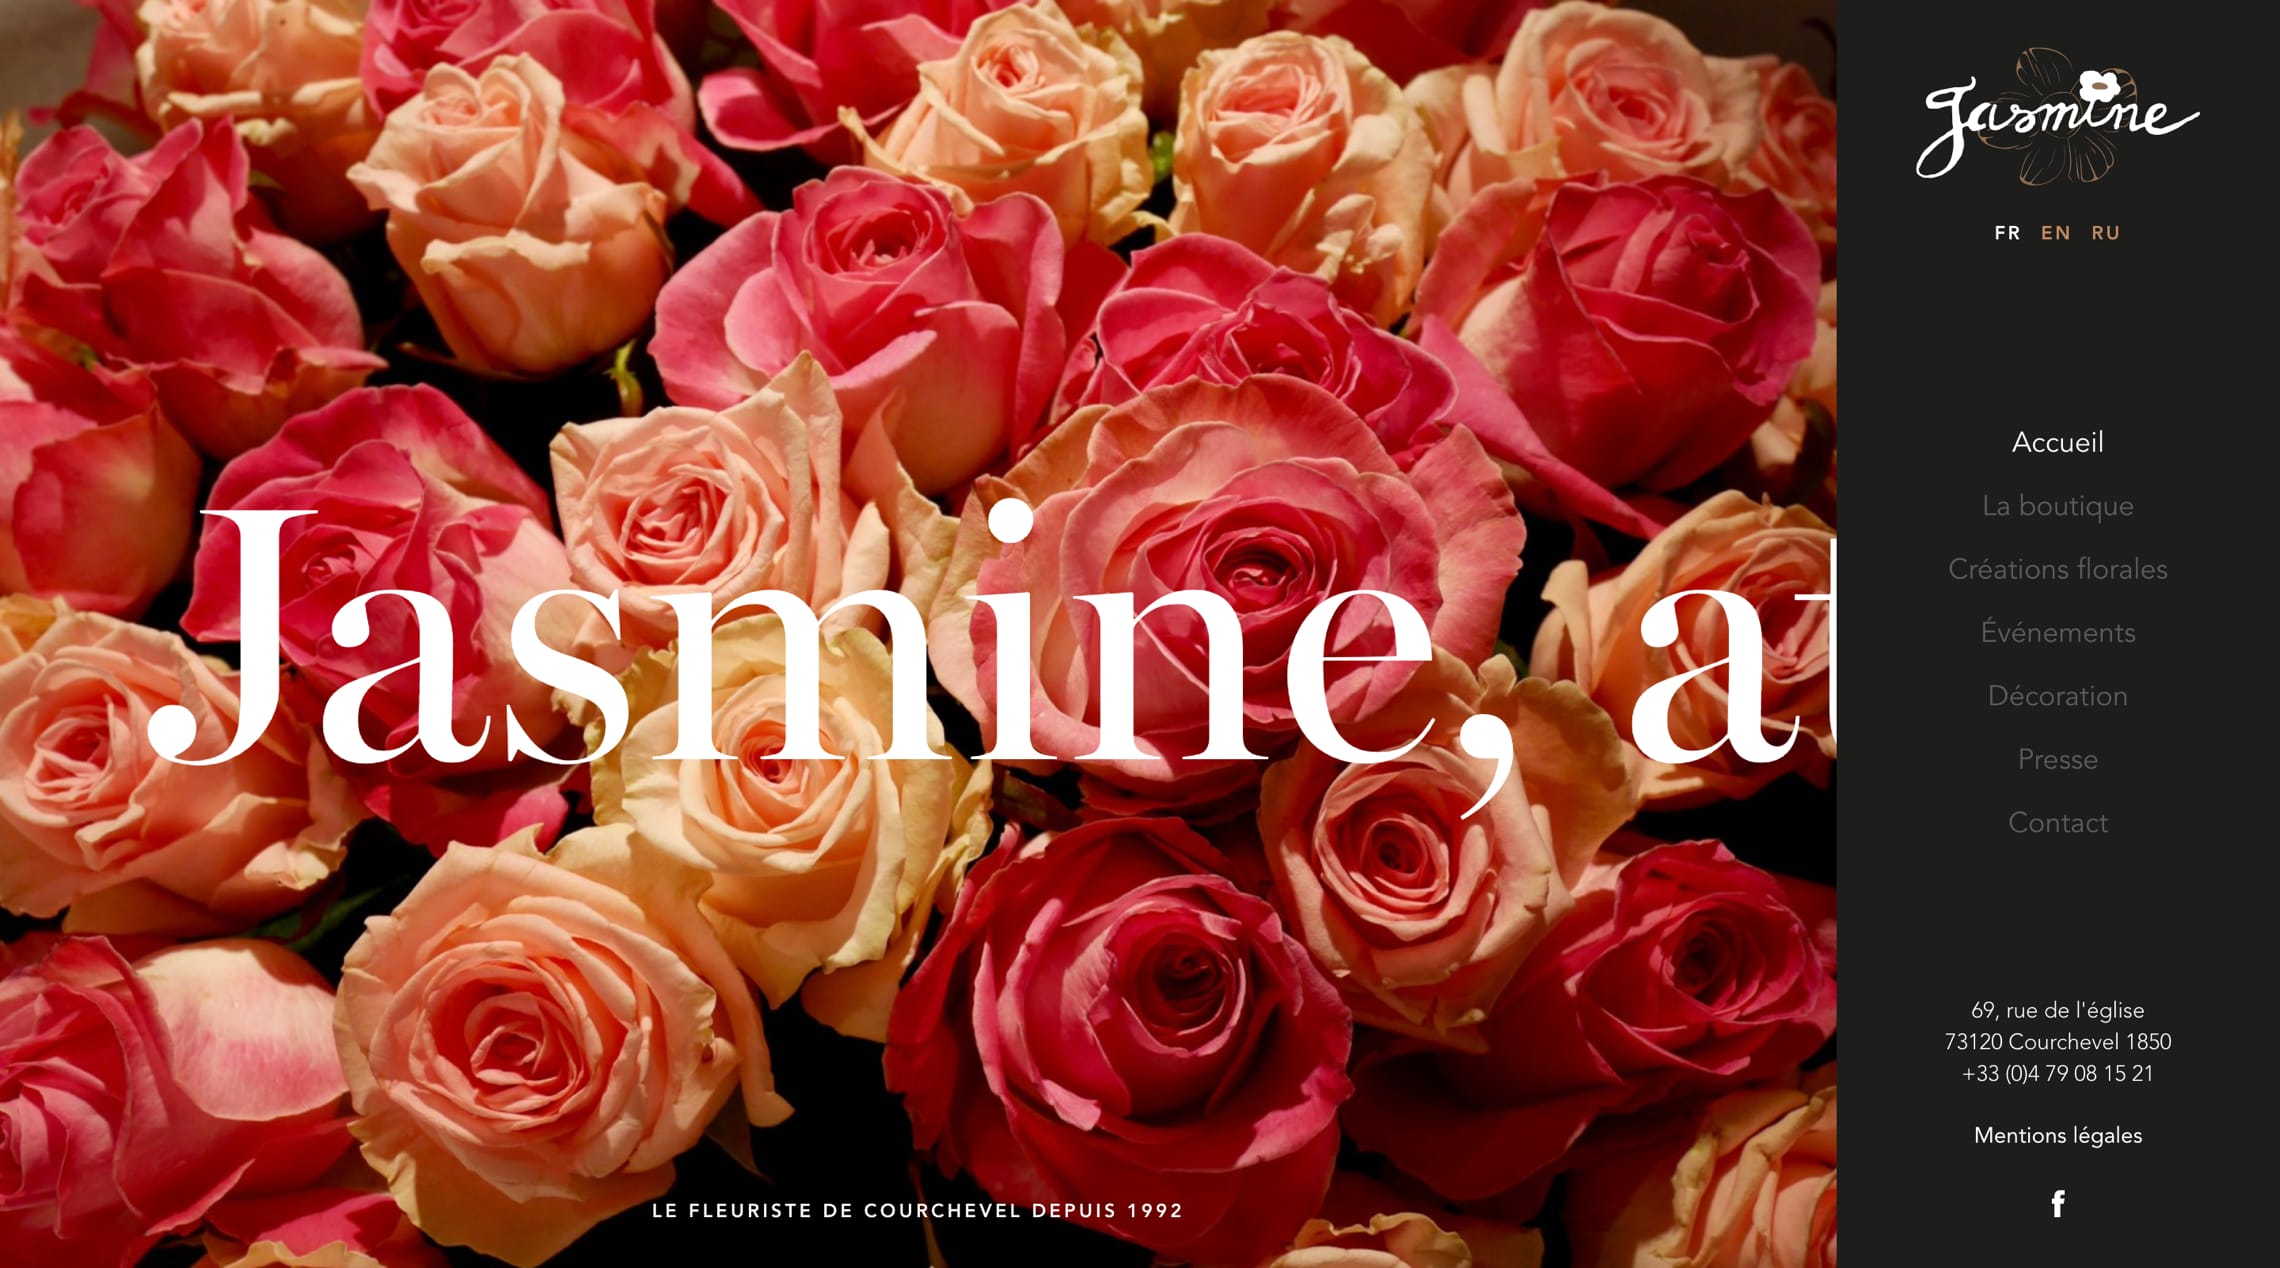 Jasmine Fleurs